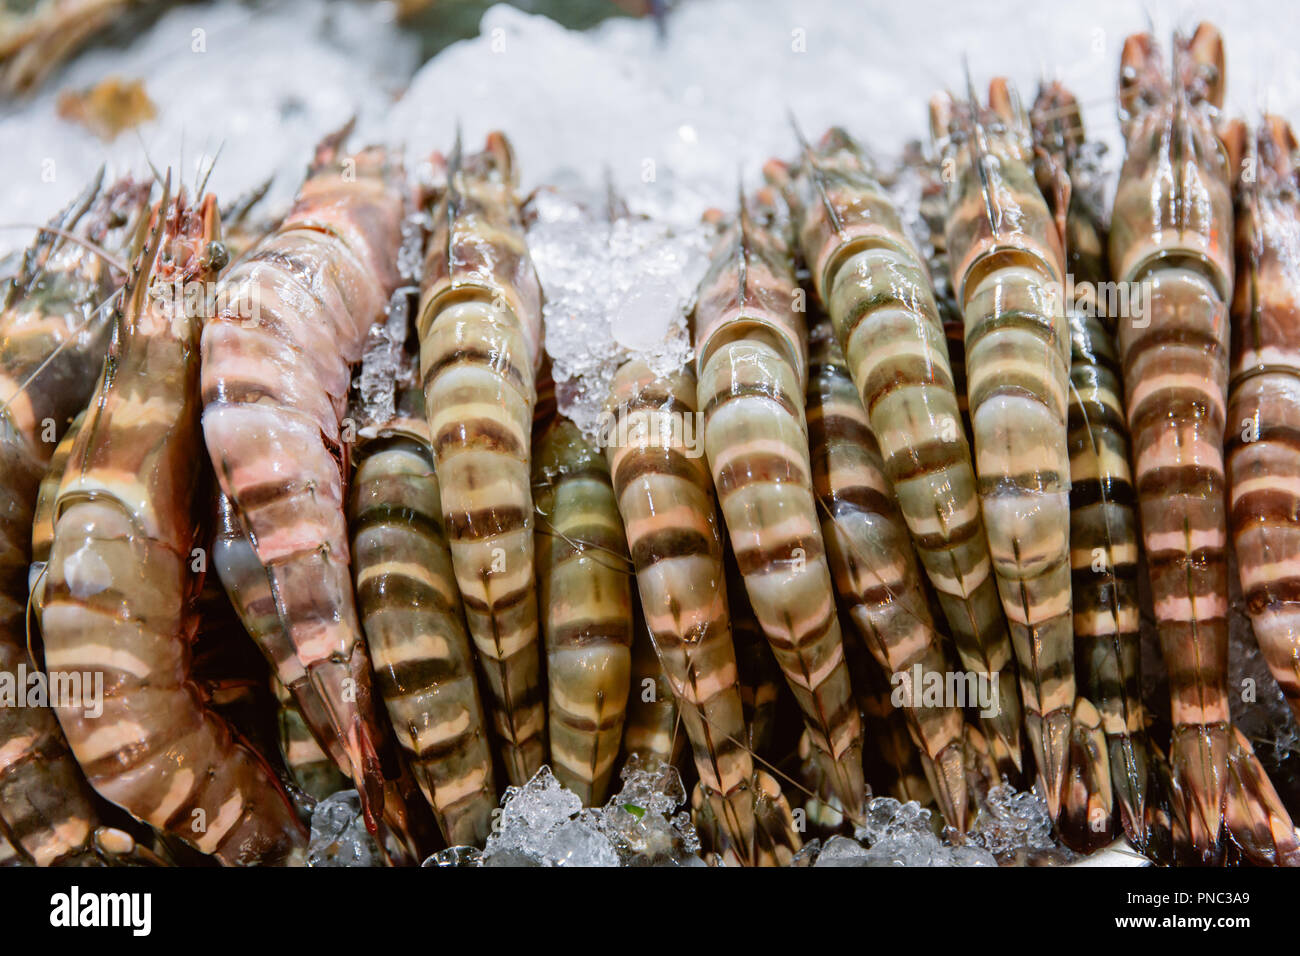 Penaeus monodon, giant tiger prawn or Asian tiger shrimp. Stock Photo